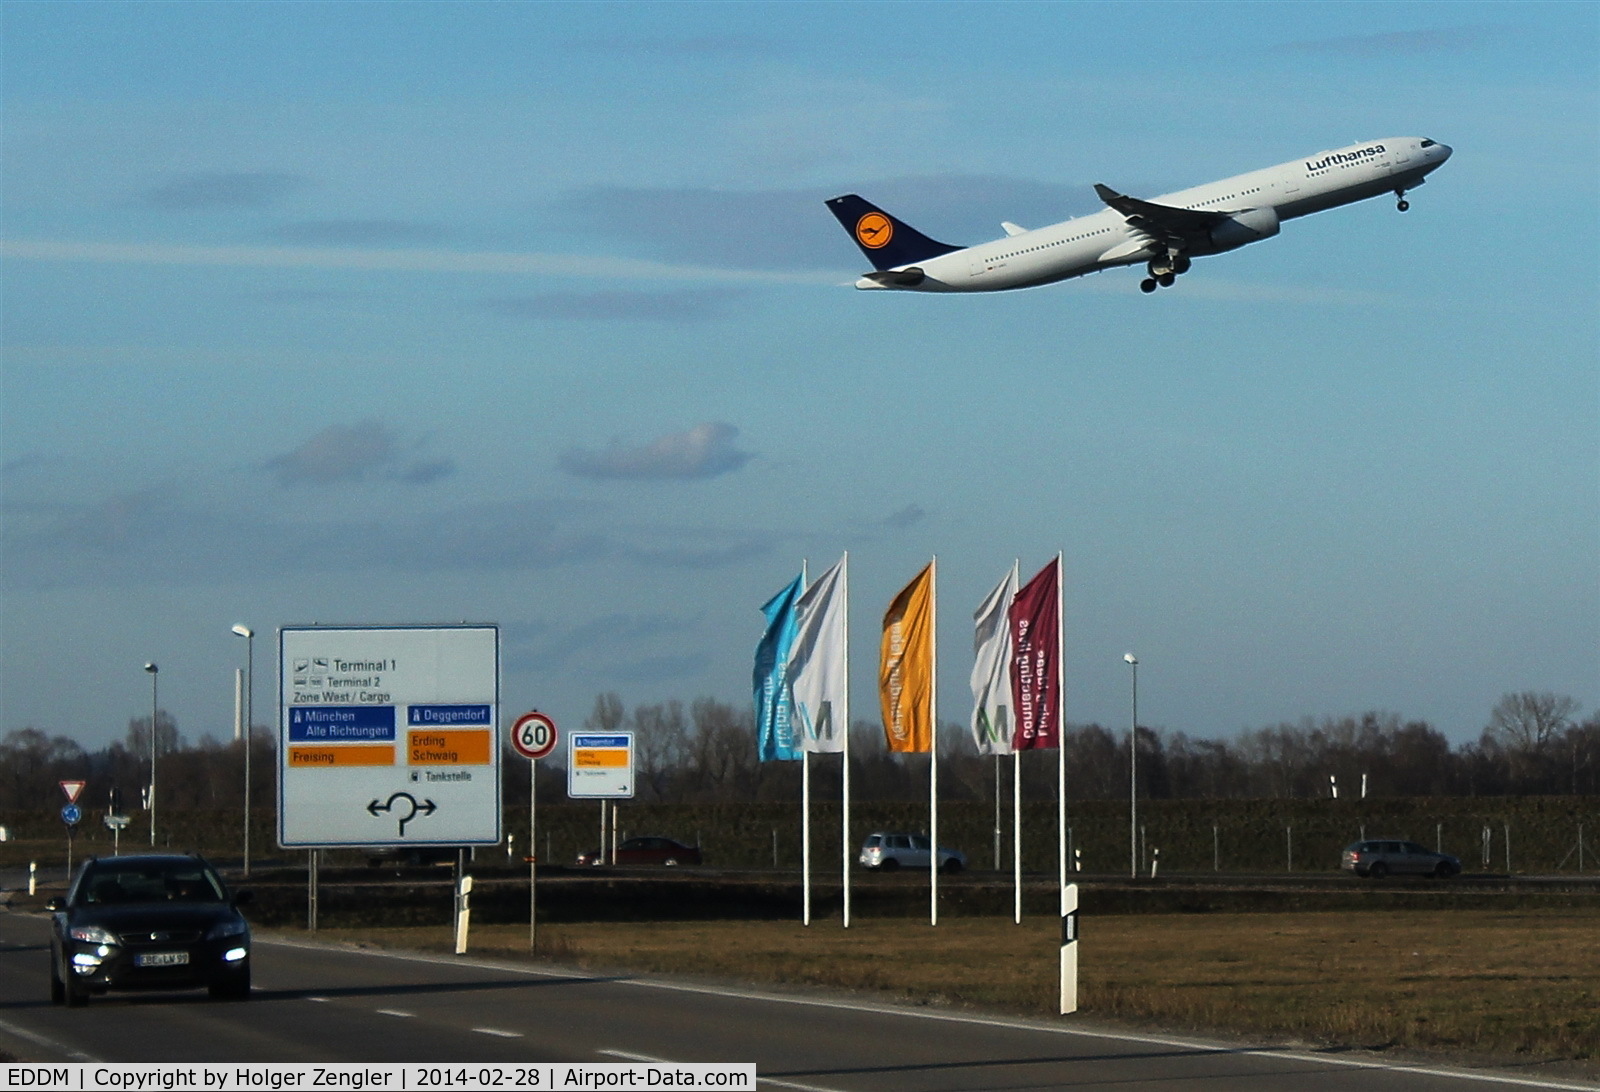 Munich International Airport (Franz Josef Strauß International Airport), Munich Germany (EDDM) - Outbound traffic on rwy 08L.....